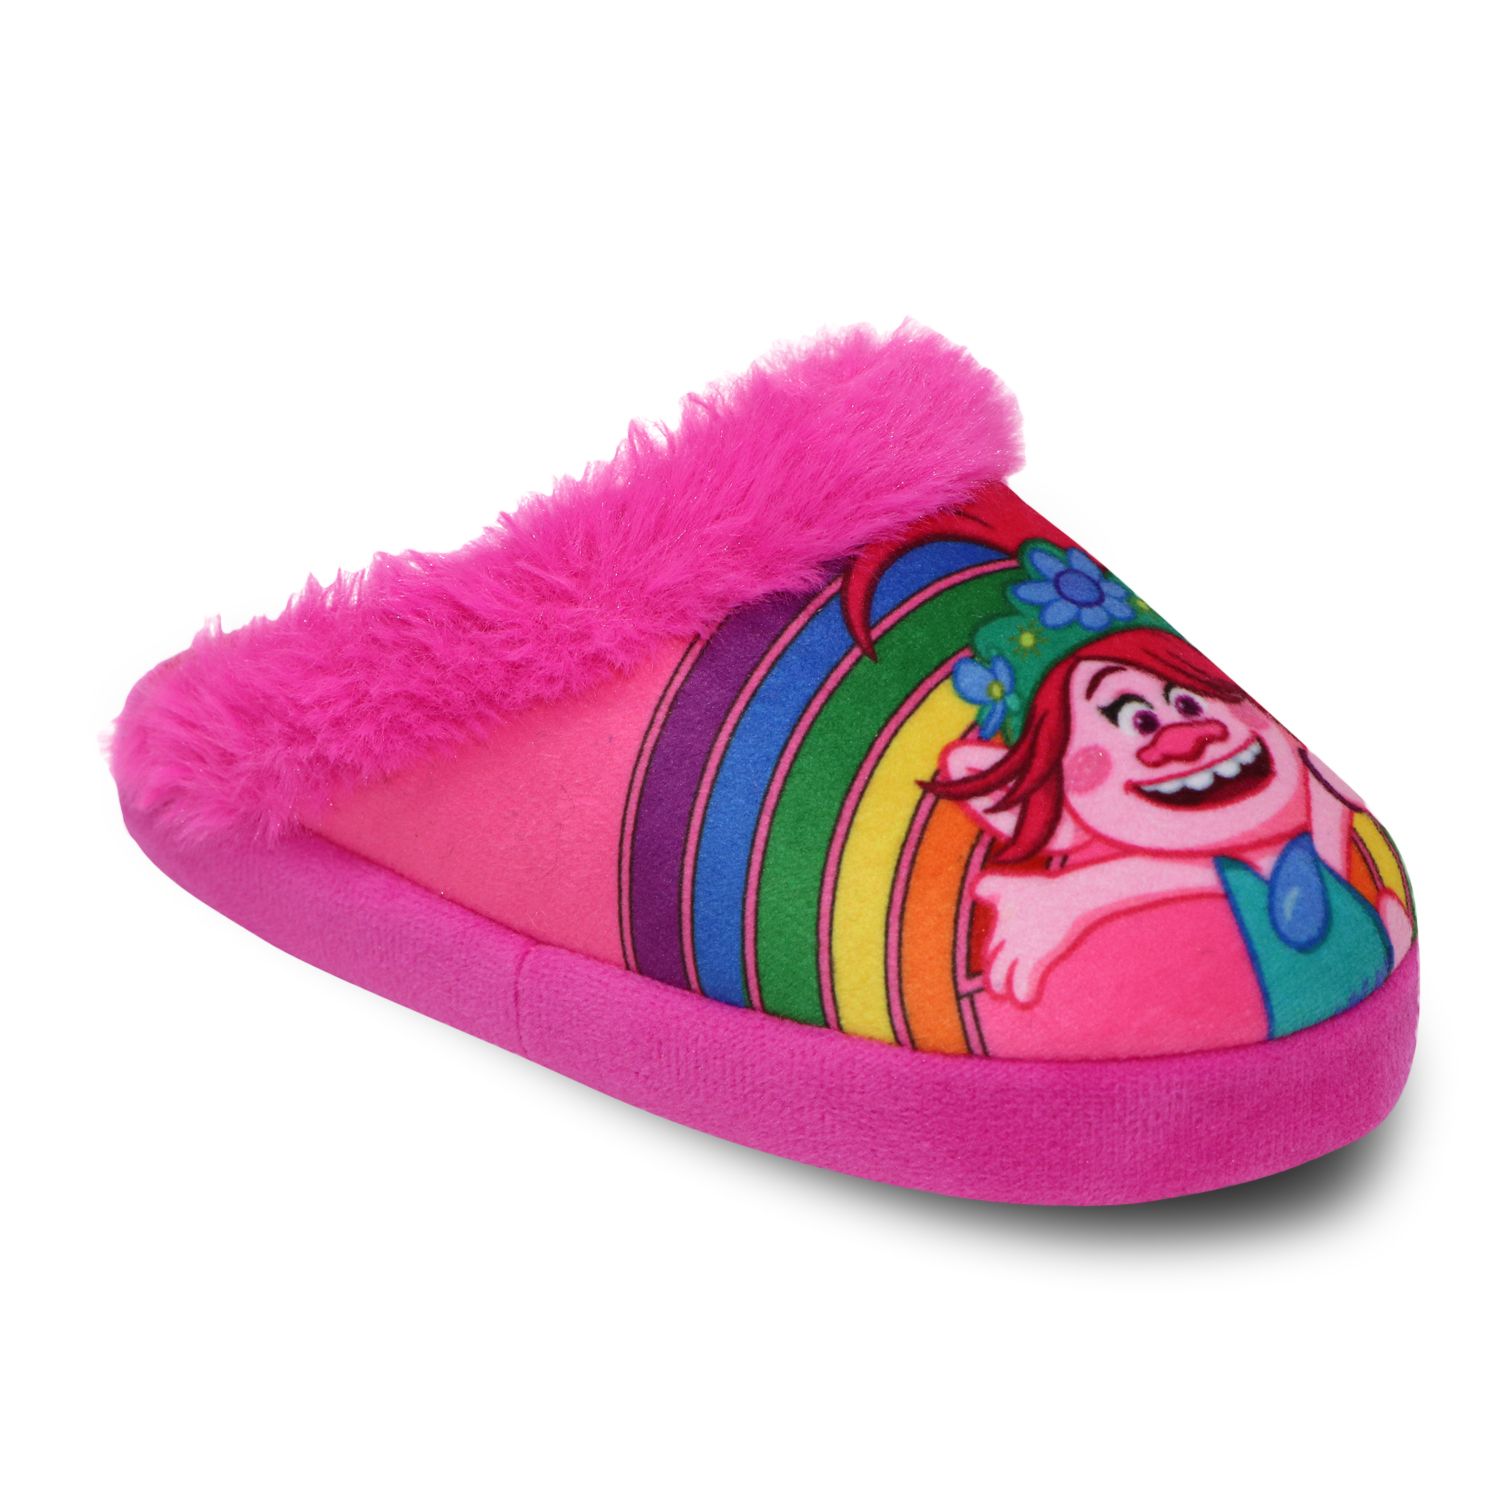 Image for DreamWorks Trolls Toddler Girls' Slippers at Kohl's.